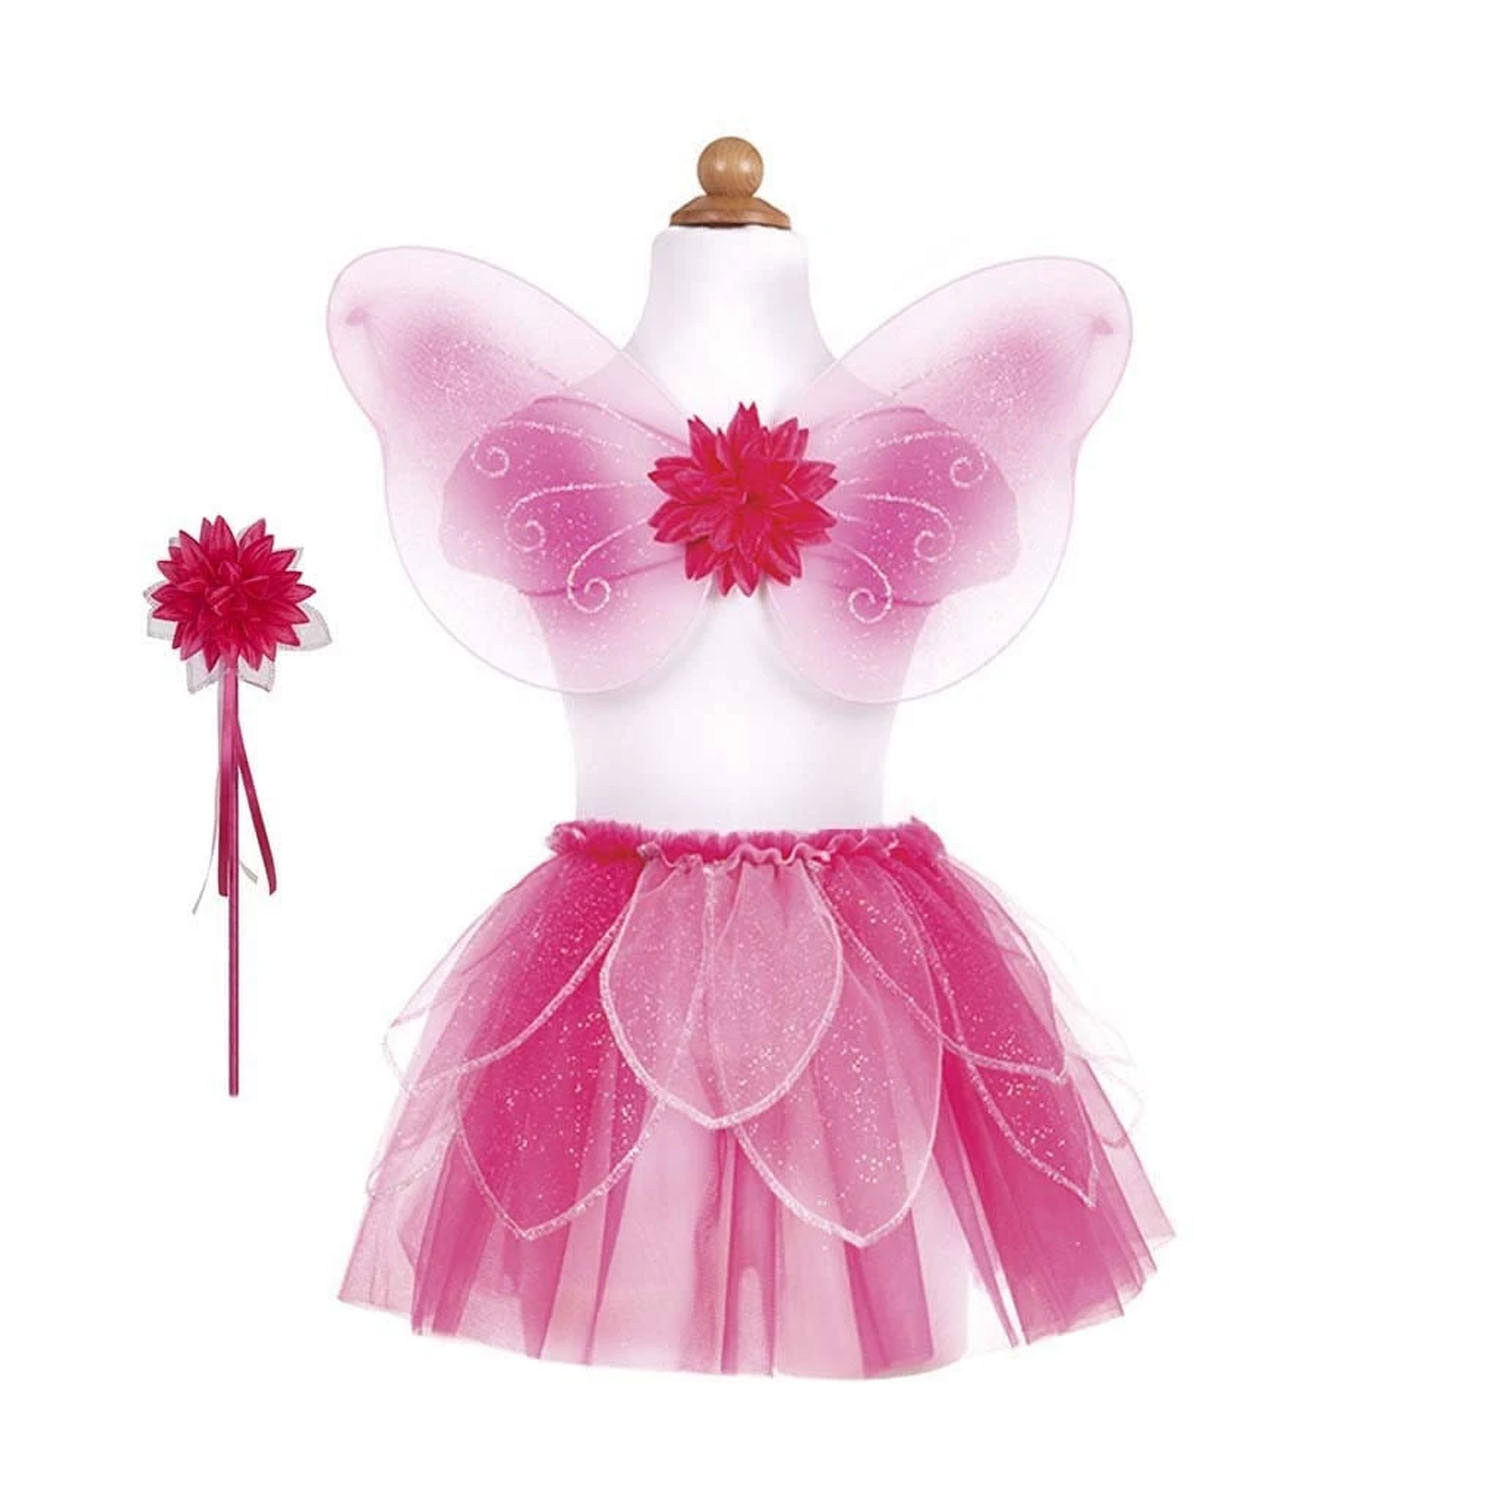 Verkleidungsset Fairy Pink, 4-6 Jahre